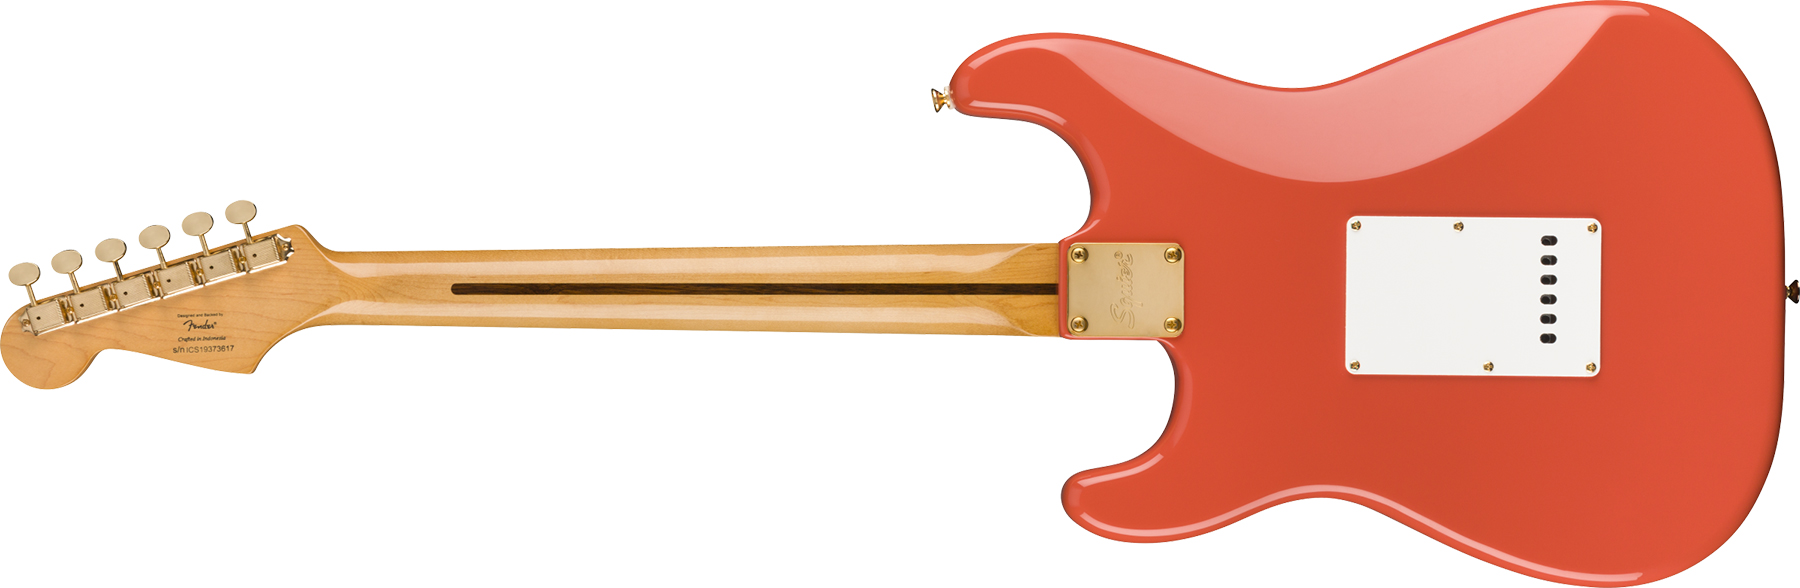 Squier Strat Classic Vibe '50s Fsr Ltd Mn - Fiesta Red With Gold Hardware - Elektrische gitaar in Str-vorm - Variation 1